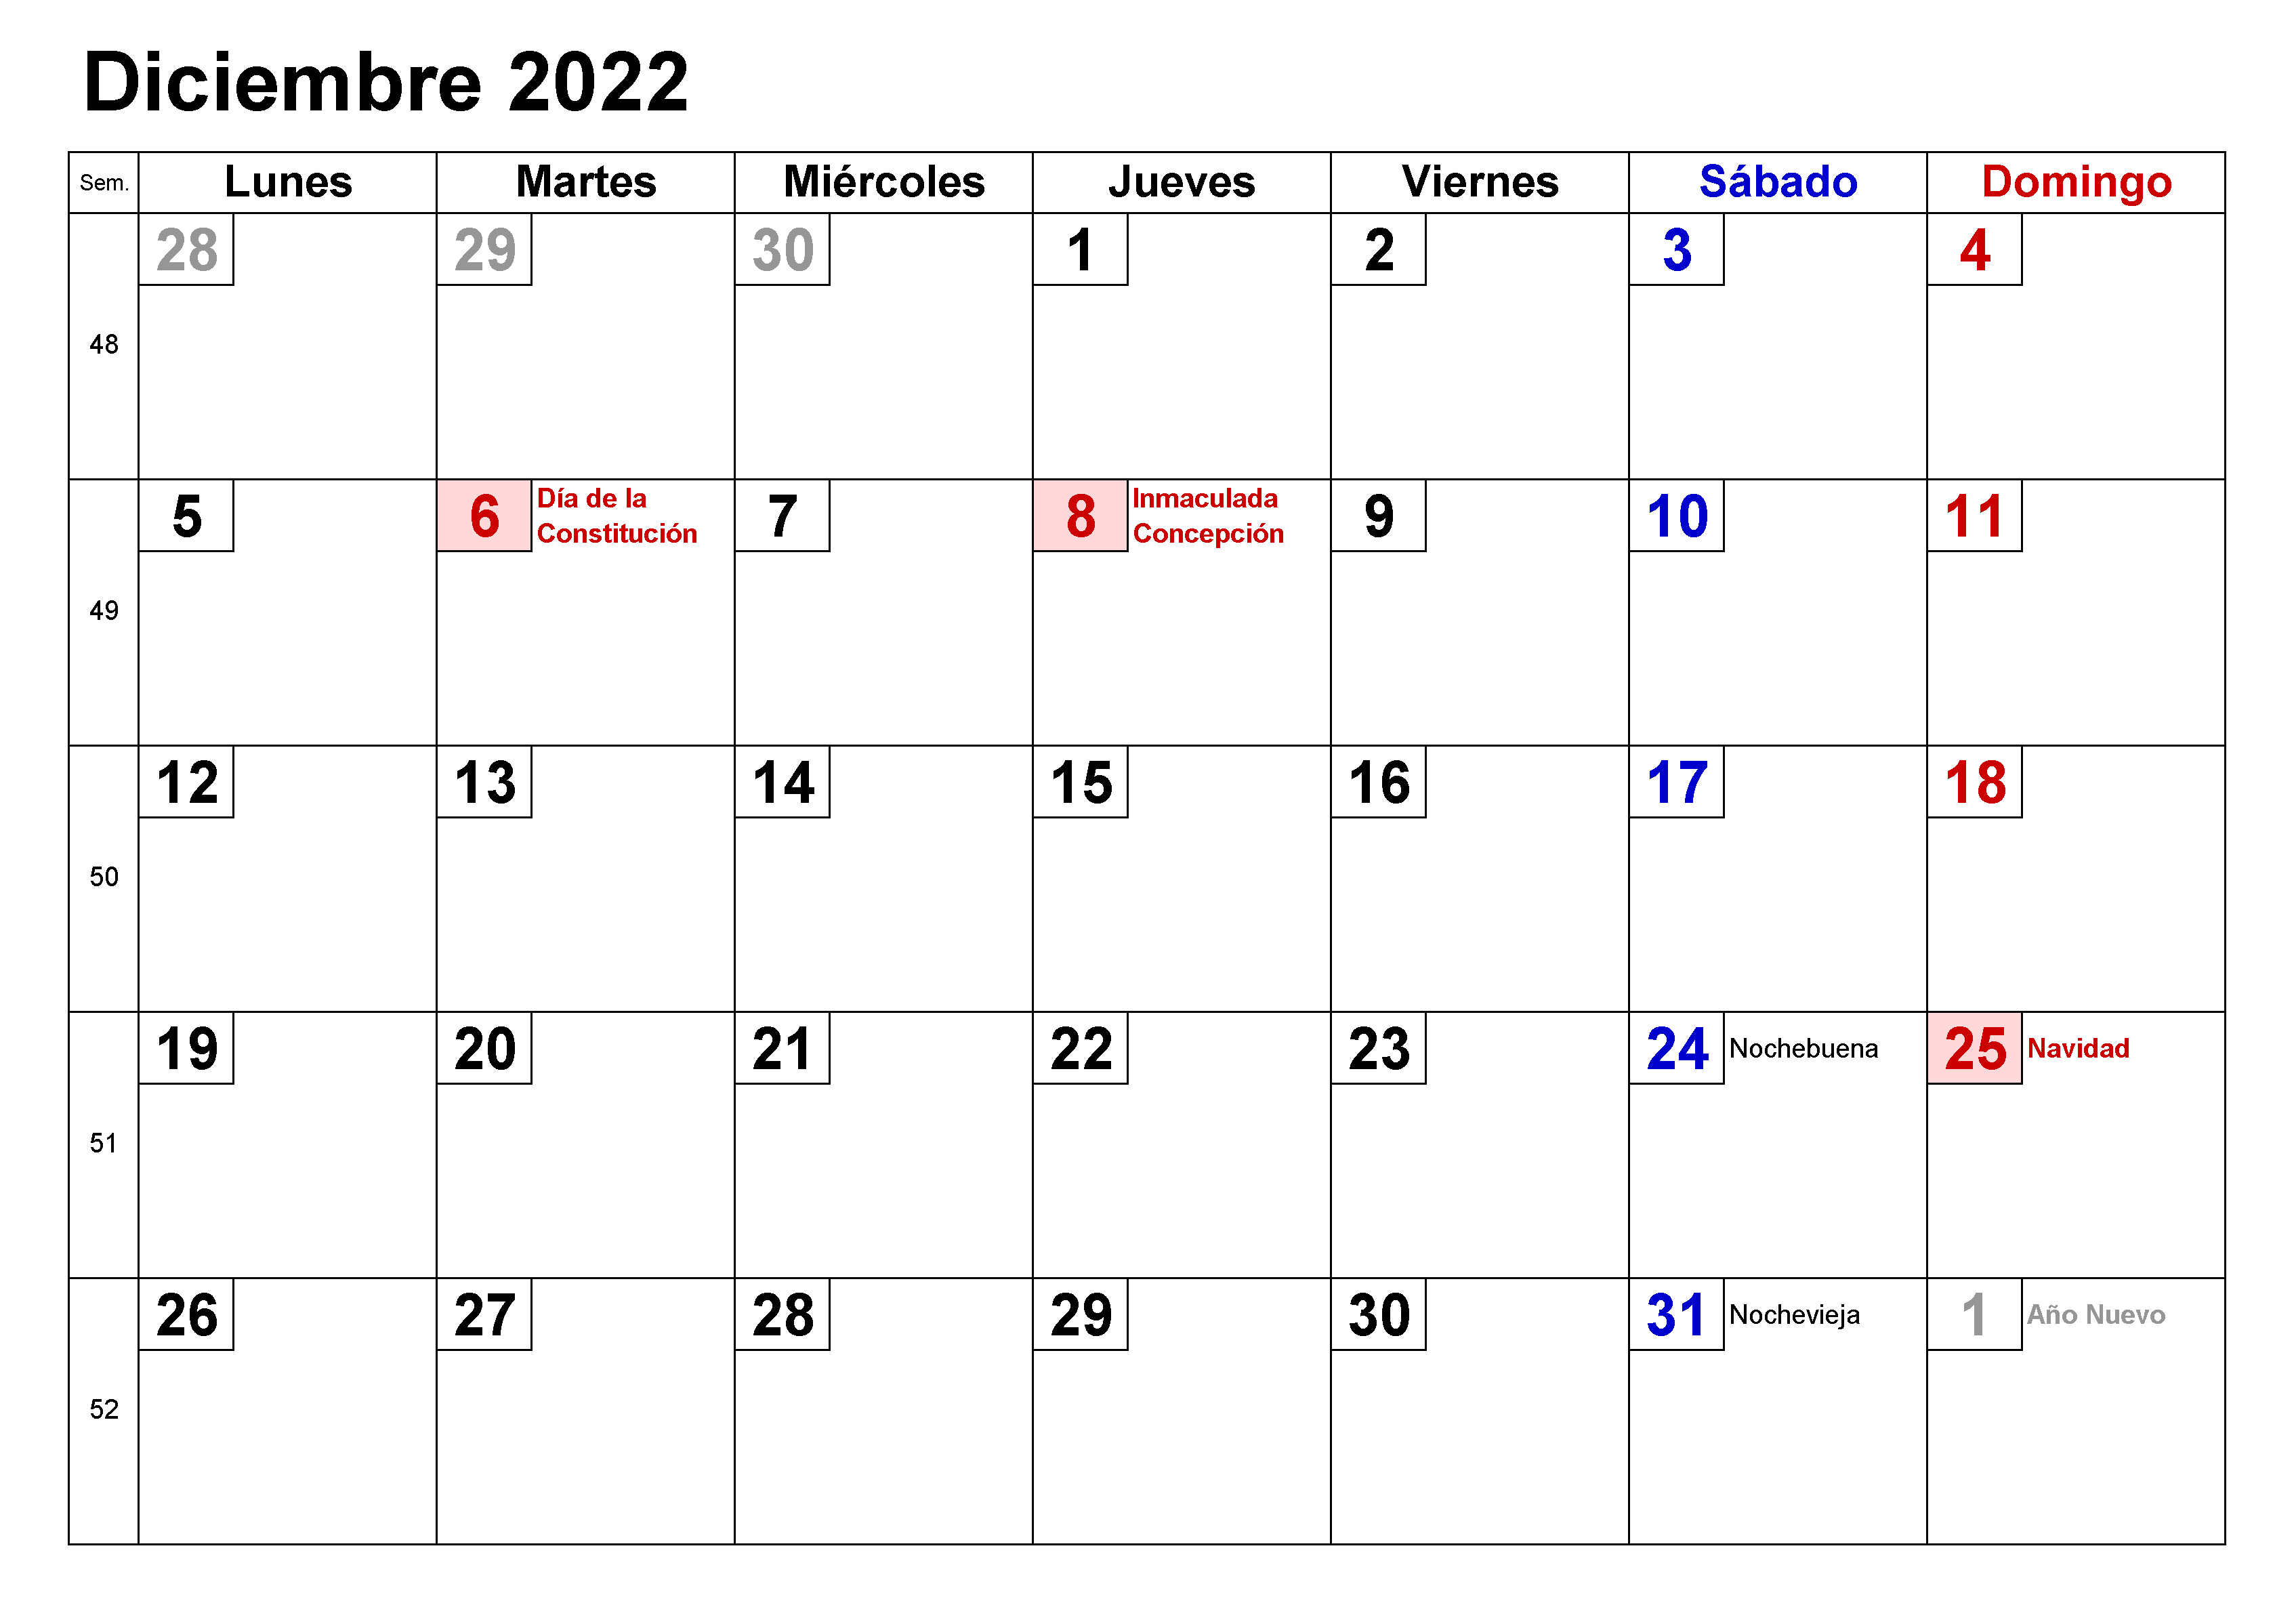 2022 Calendario Diciembre Con Festivos